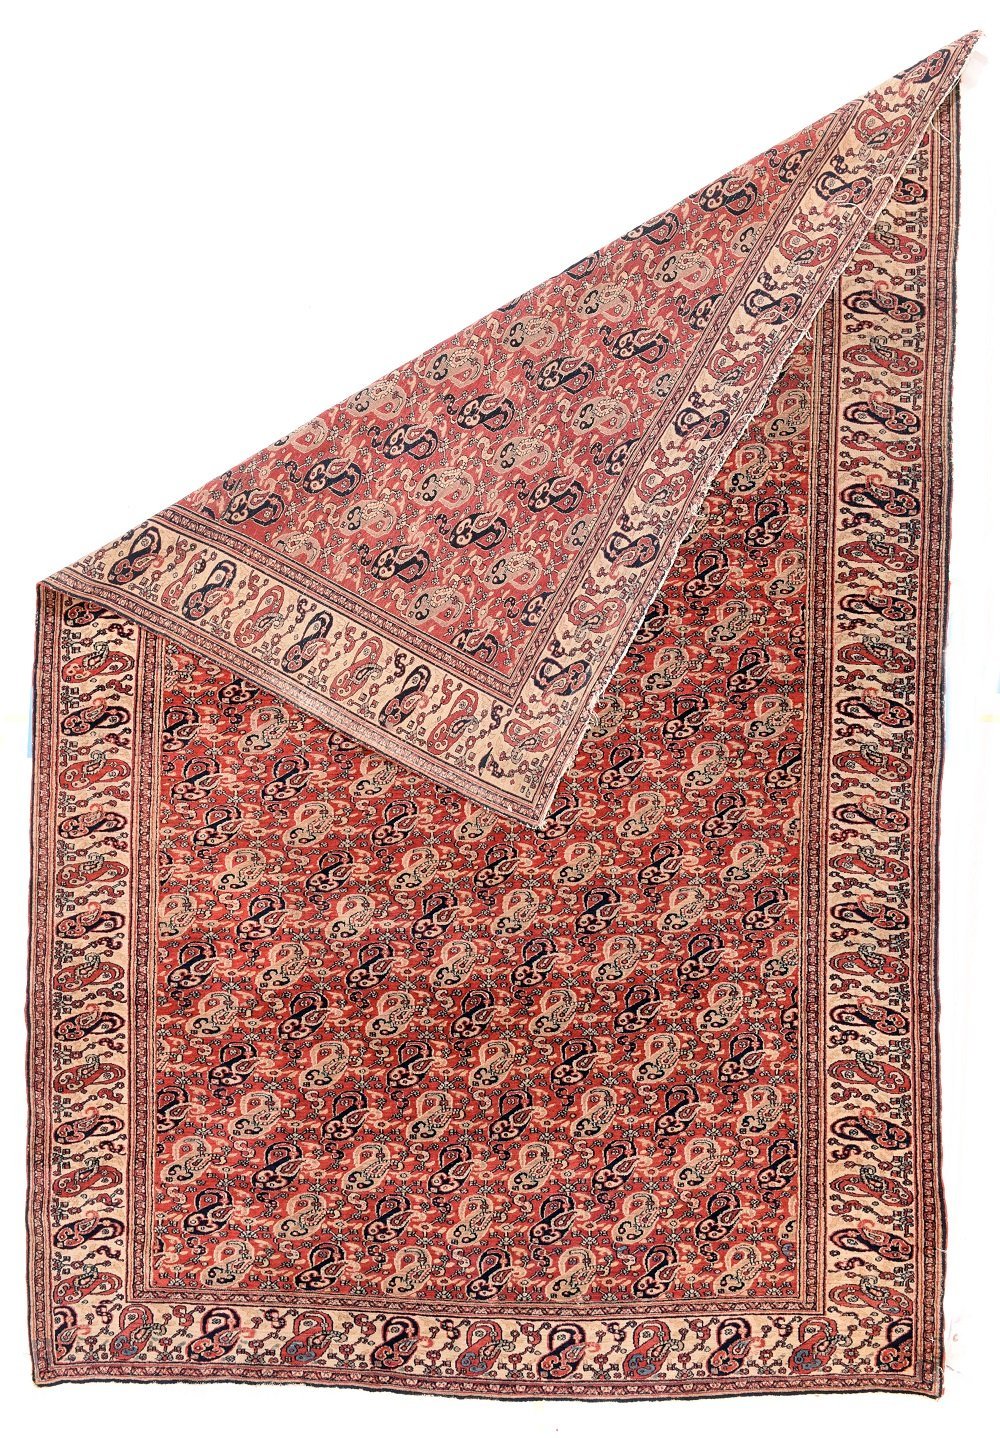 Antique Hand made Doroksh Persian Rug